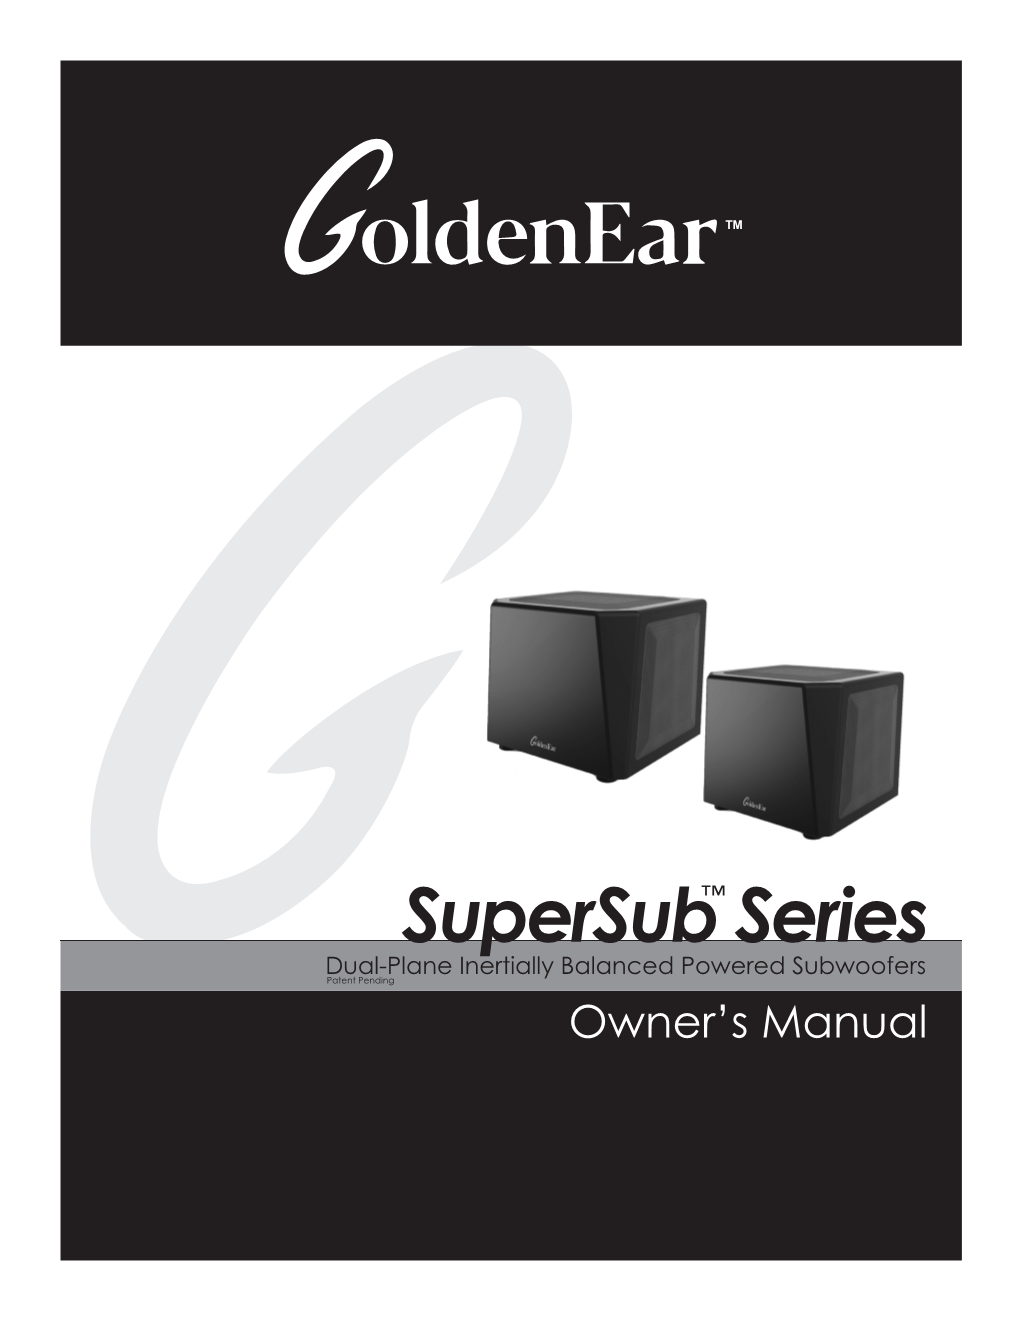 Supersub Series Manual 06 22 21.Indd 1 6/23/21 5:32 PM Supersub Series Owner’S Manual